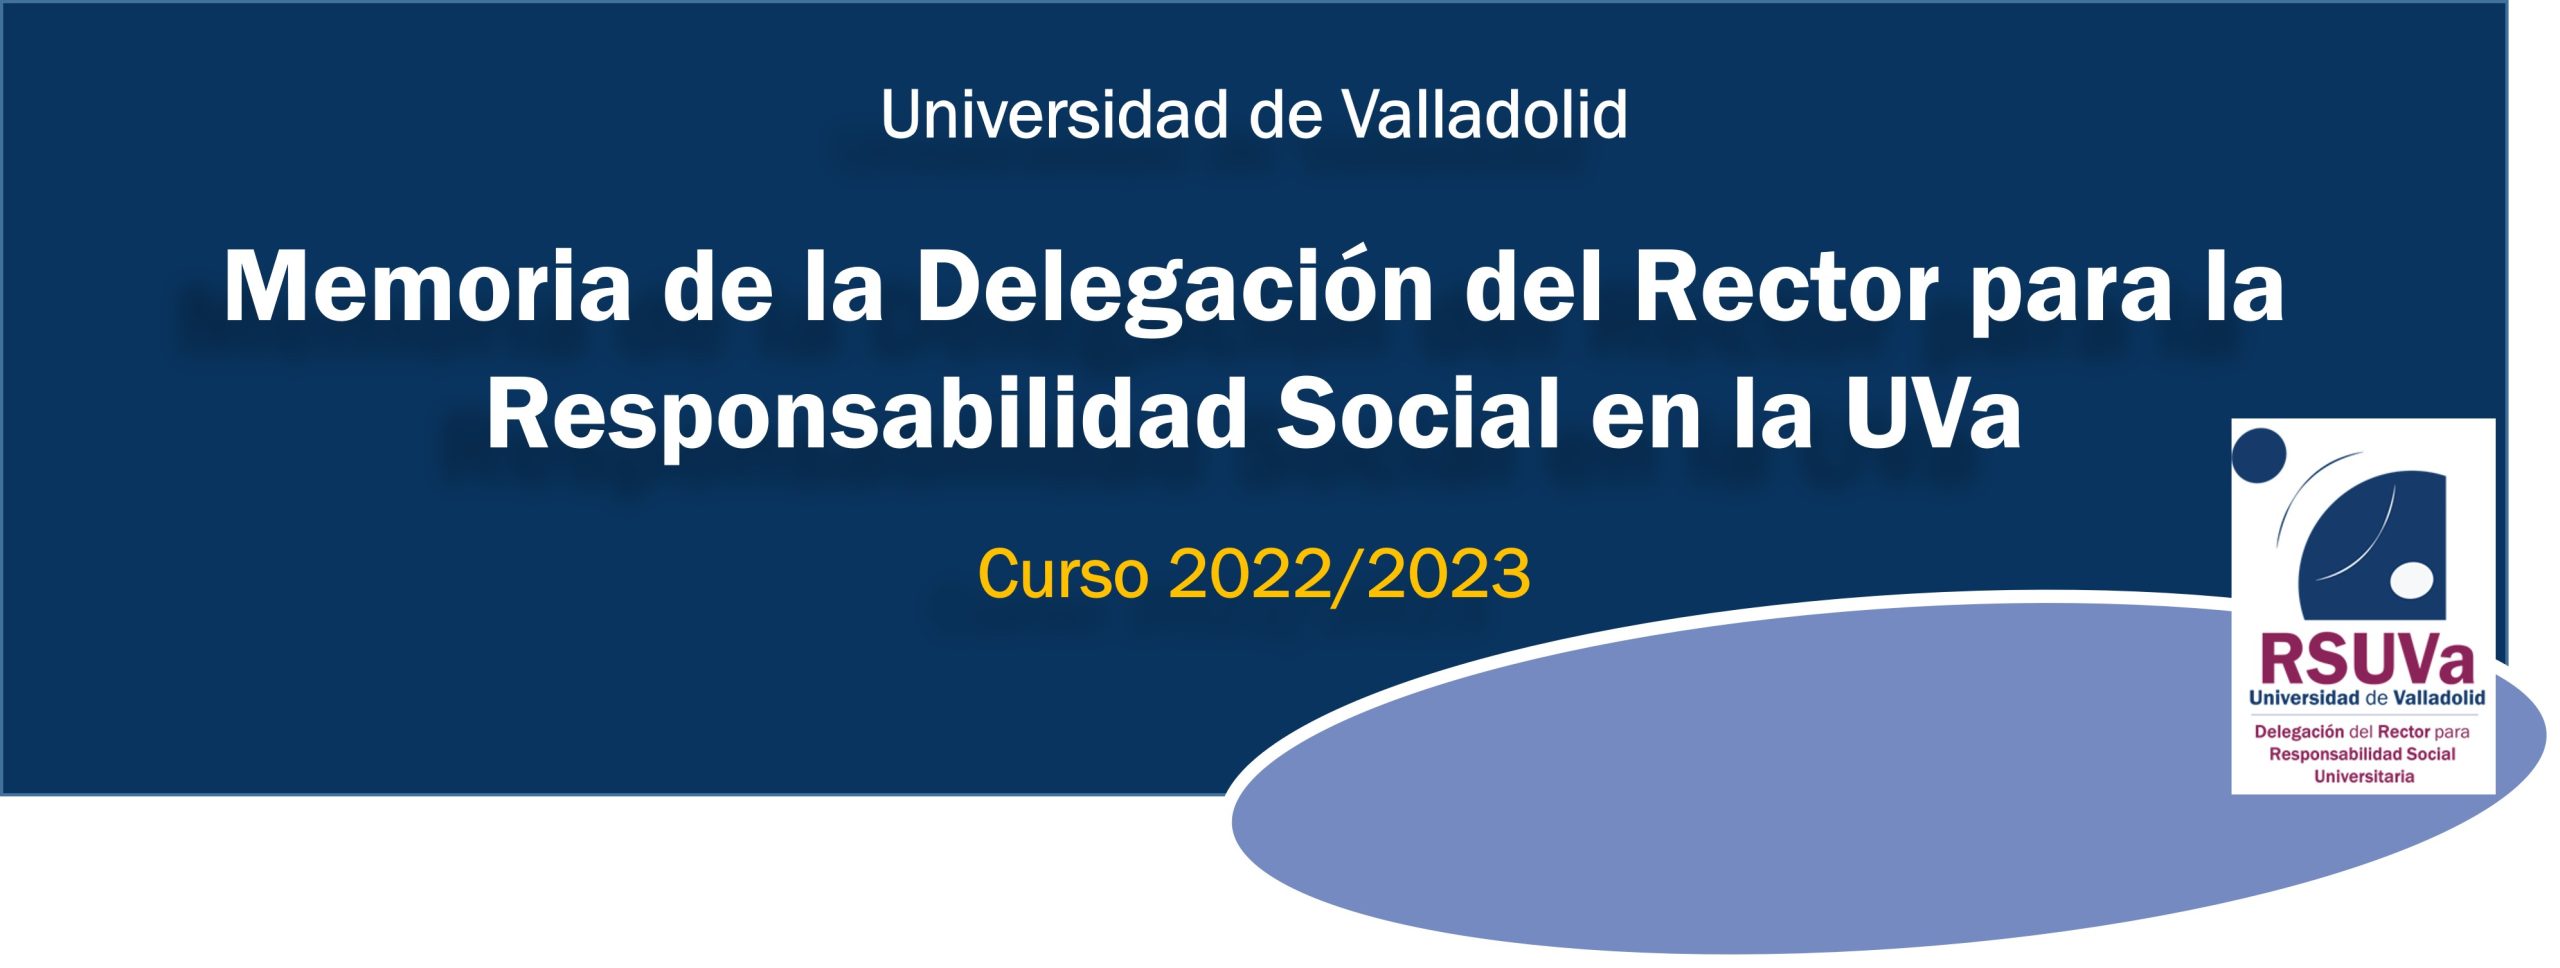 Memoria de la Delegación del Rector para la Responsabilidad Social Universitaria. Curso 2022/2023